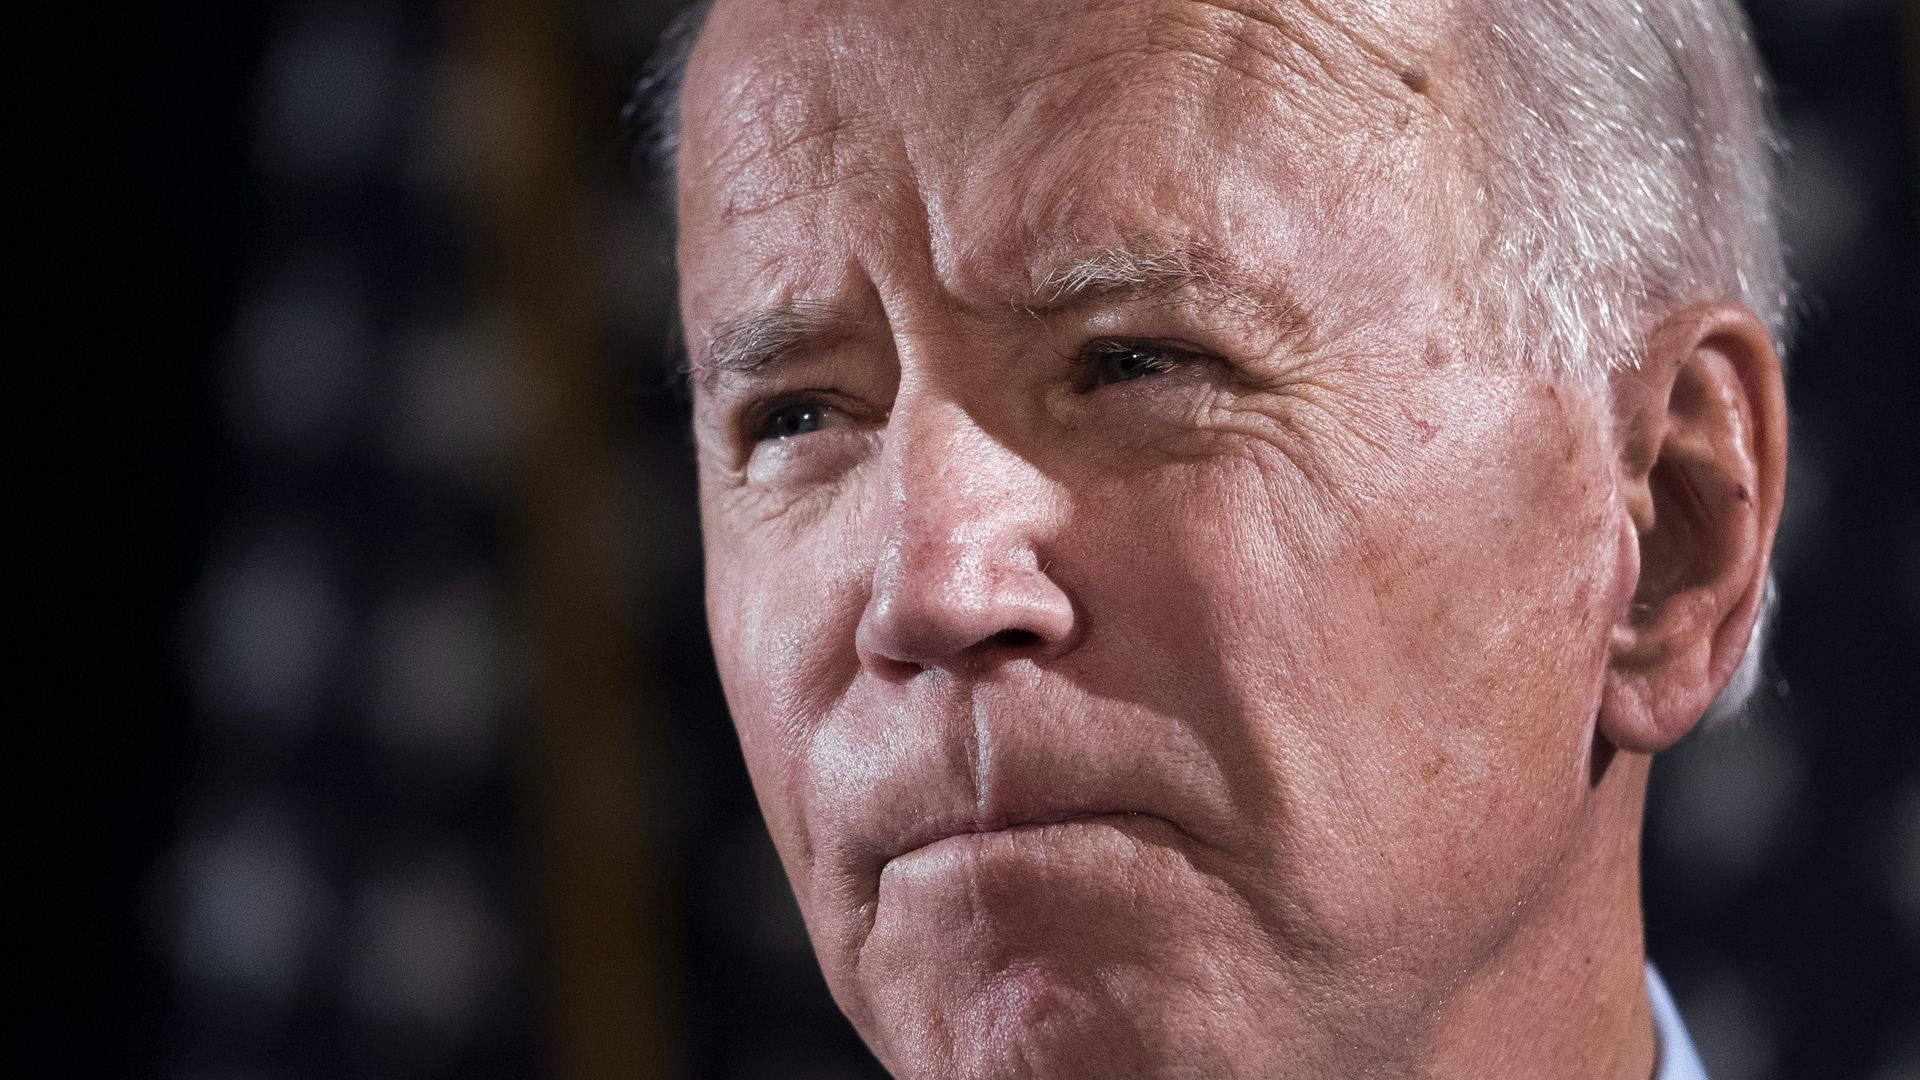 Joe Biden Officially Asks Senate to Search for Tara Reade in Senate Records